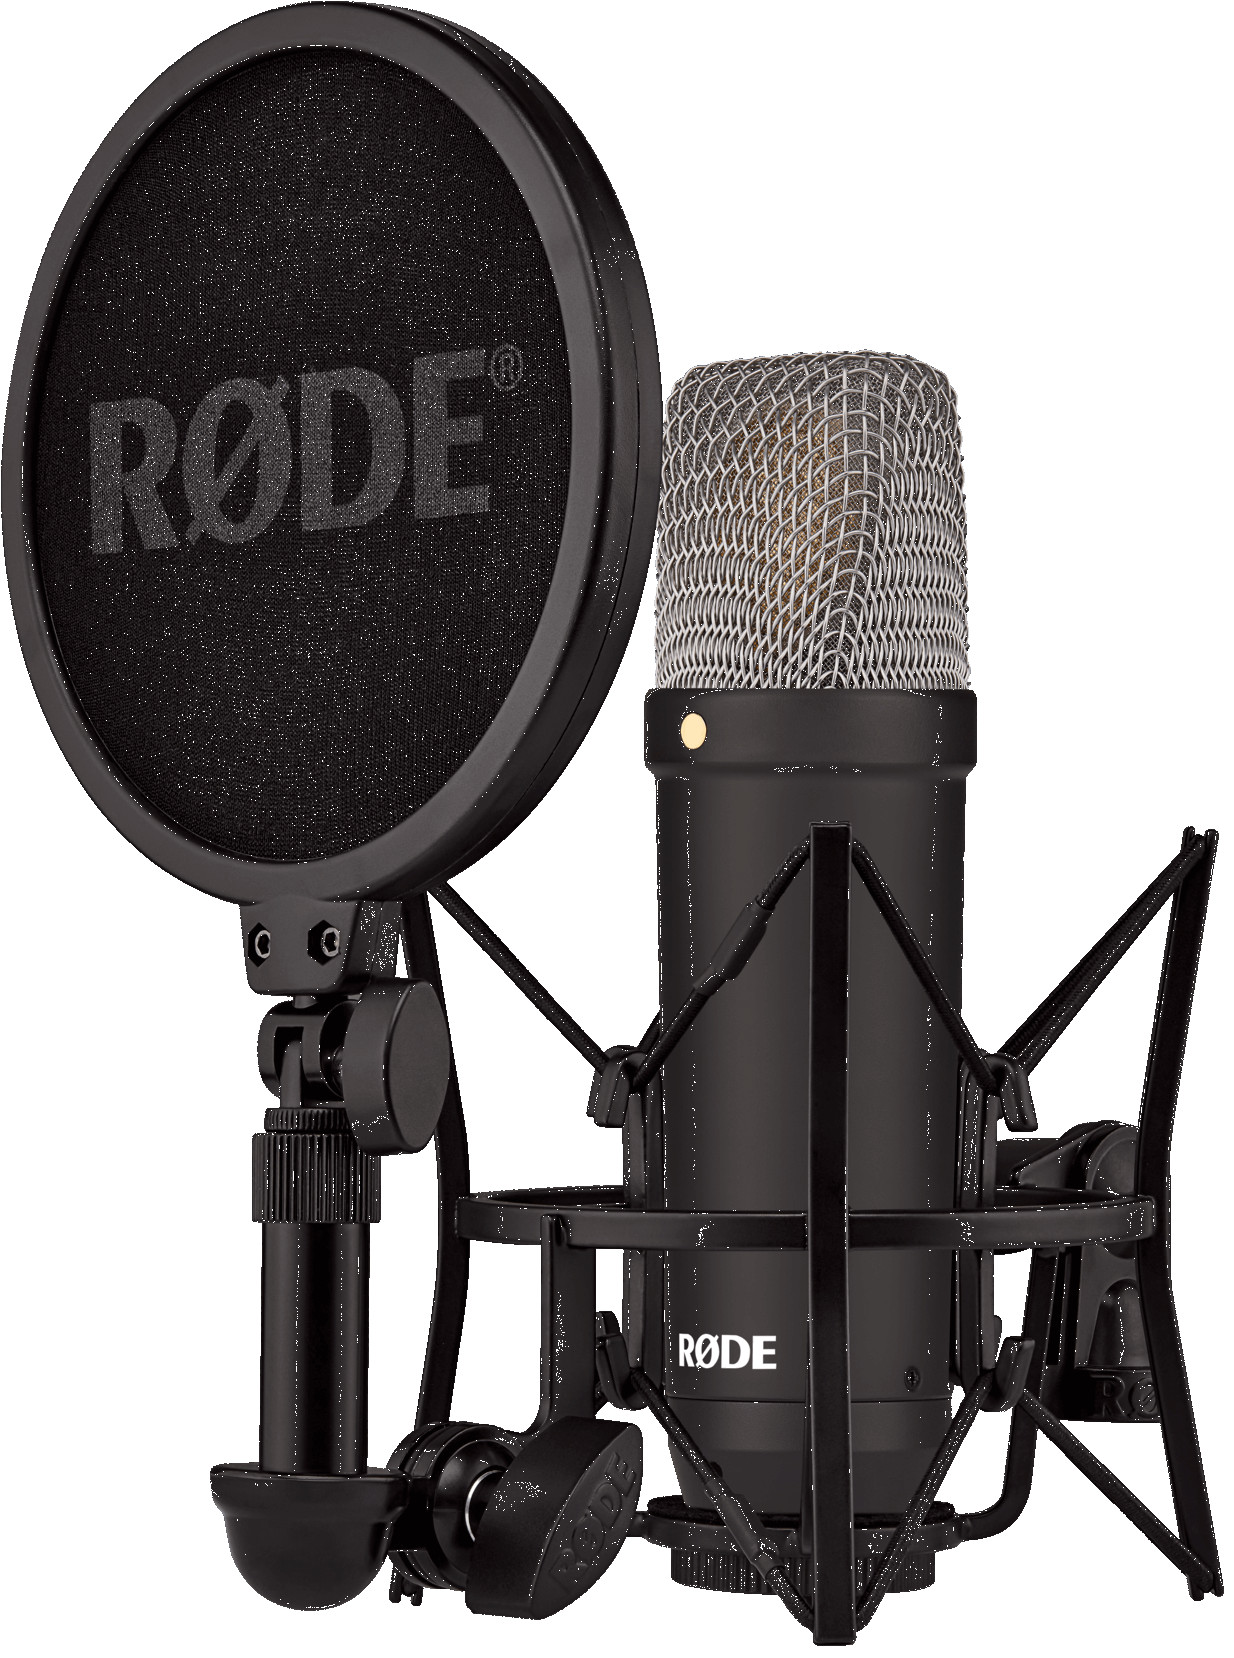 Rode микрофон NT1 Signature Series, черный